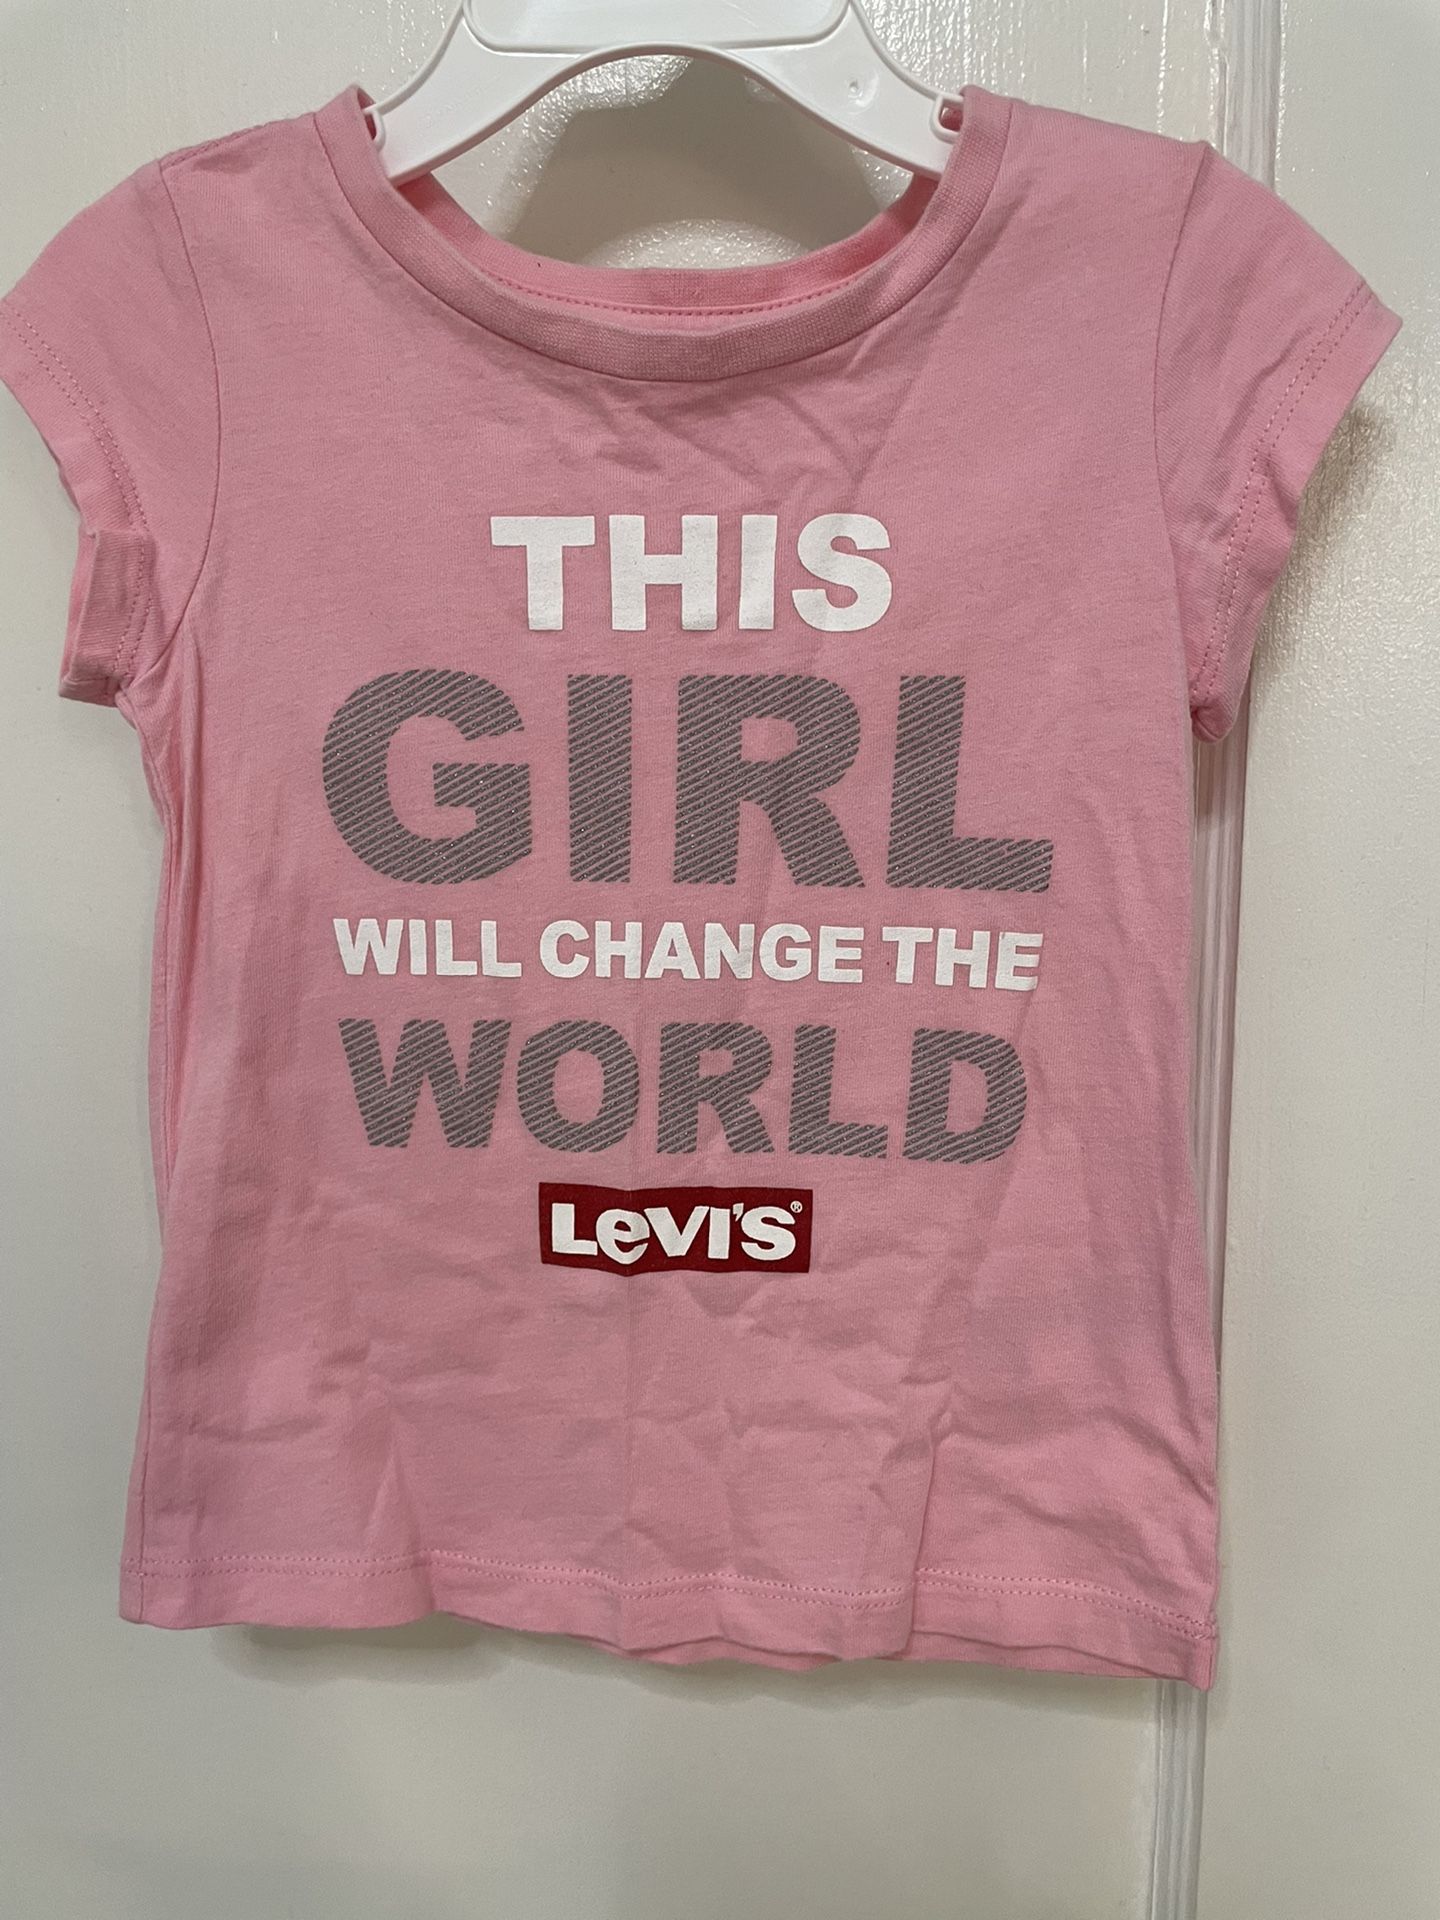 Levi’s T-Shirt Size 3T